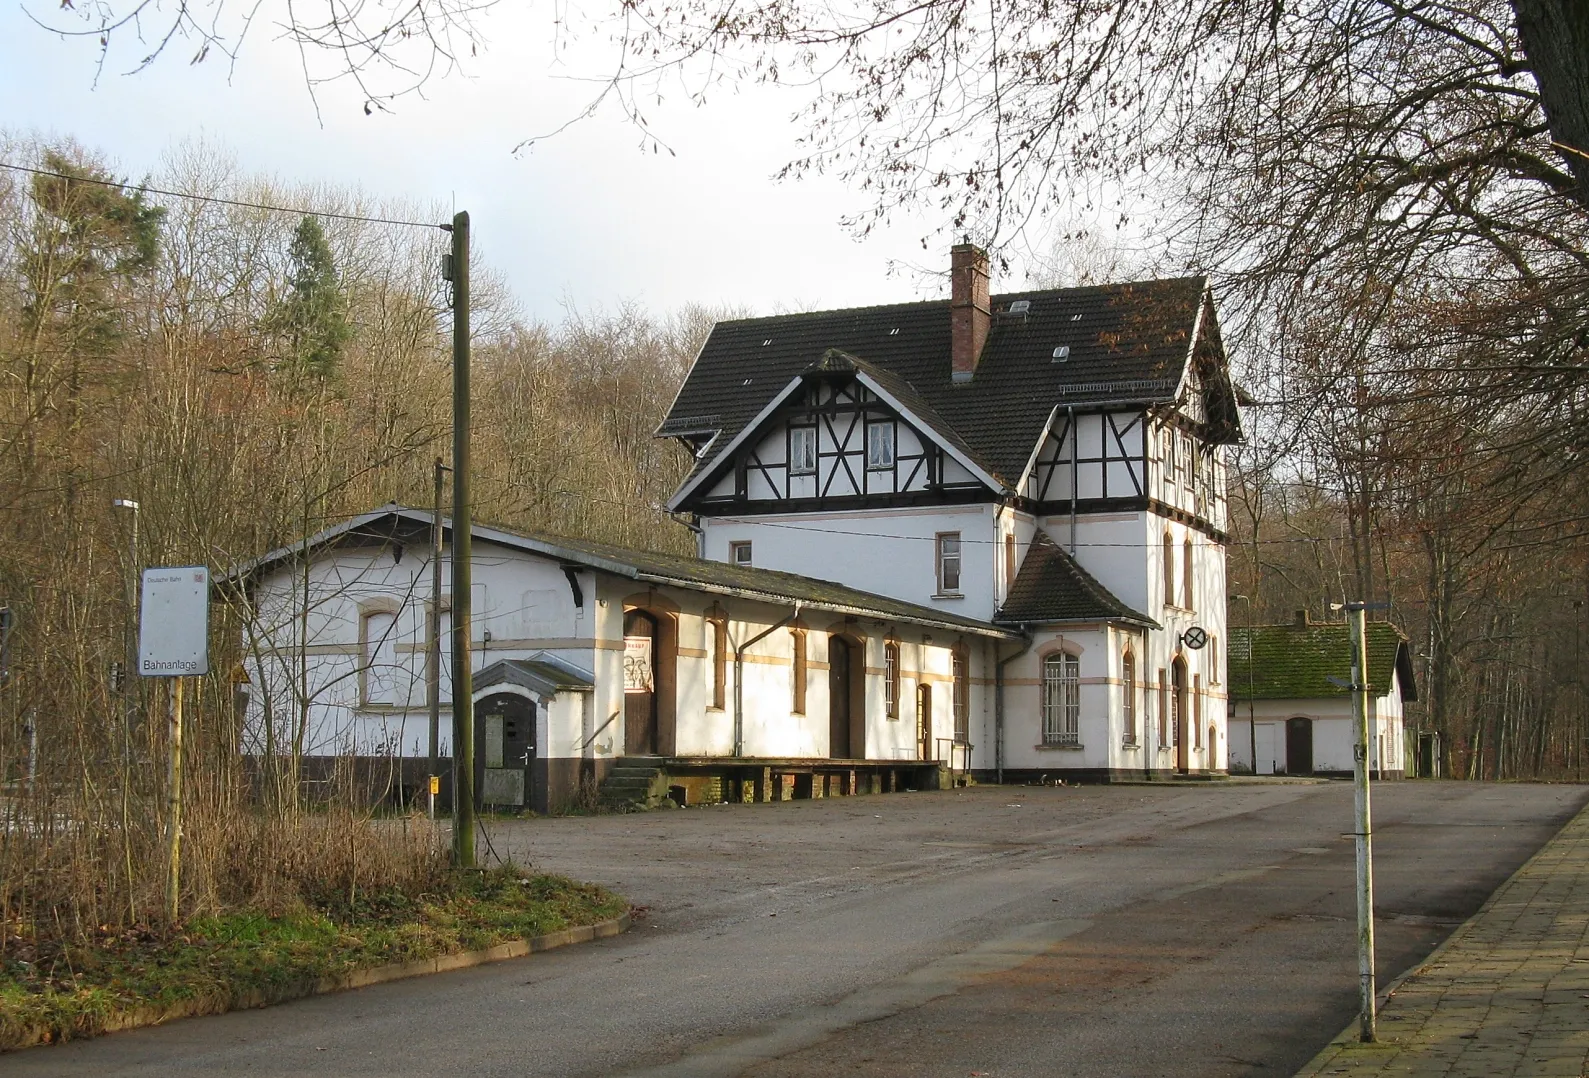 Photo showing: Gadebusch train station, Mecklenburg-Vorpommern, Germany